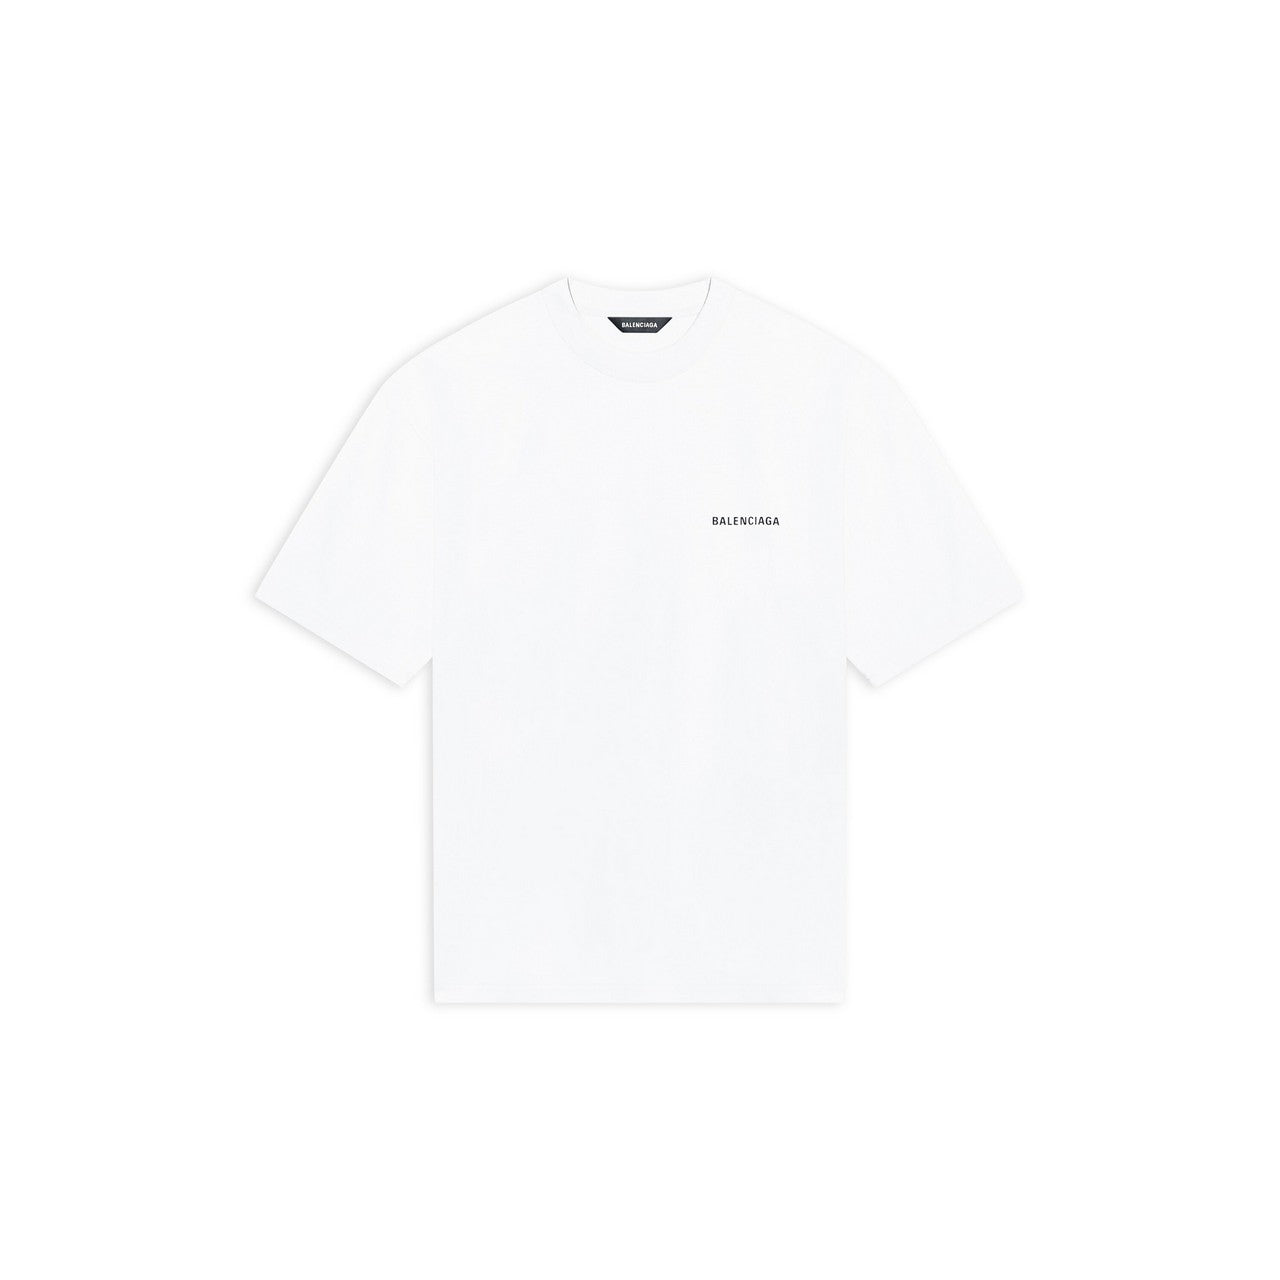 T-shirt Balenciaga 612966 in jersey logo stampa sul petto e schiena